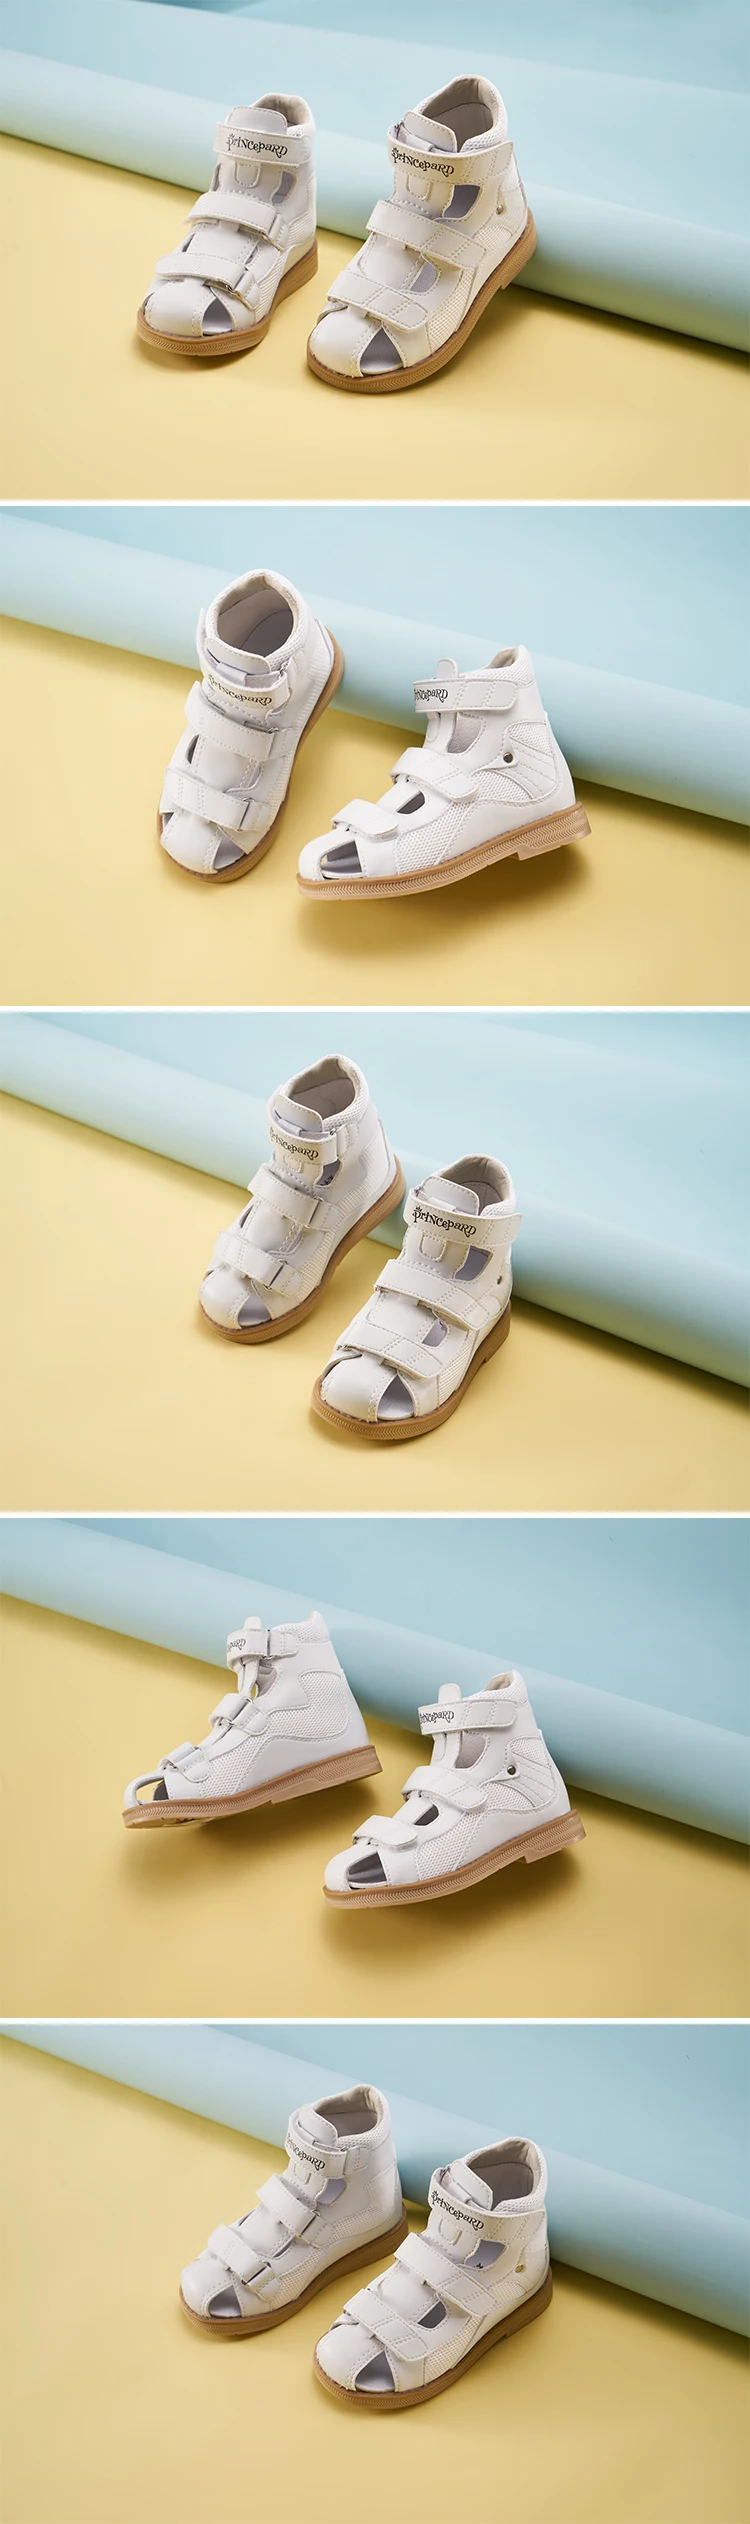 Princepard летние сандалии для детей детские белые ортопедические сандалии из натуральной кожи ортопедические сандалии для мальчиков и девочек